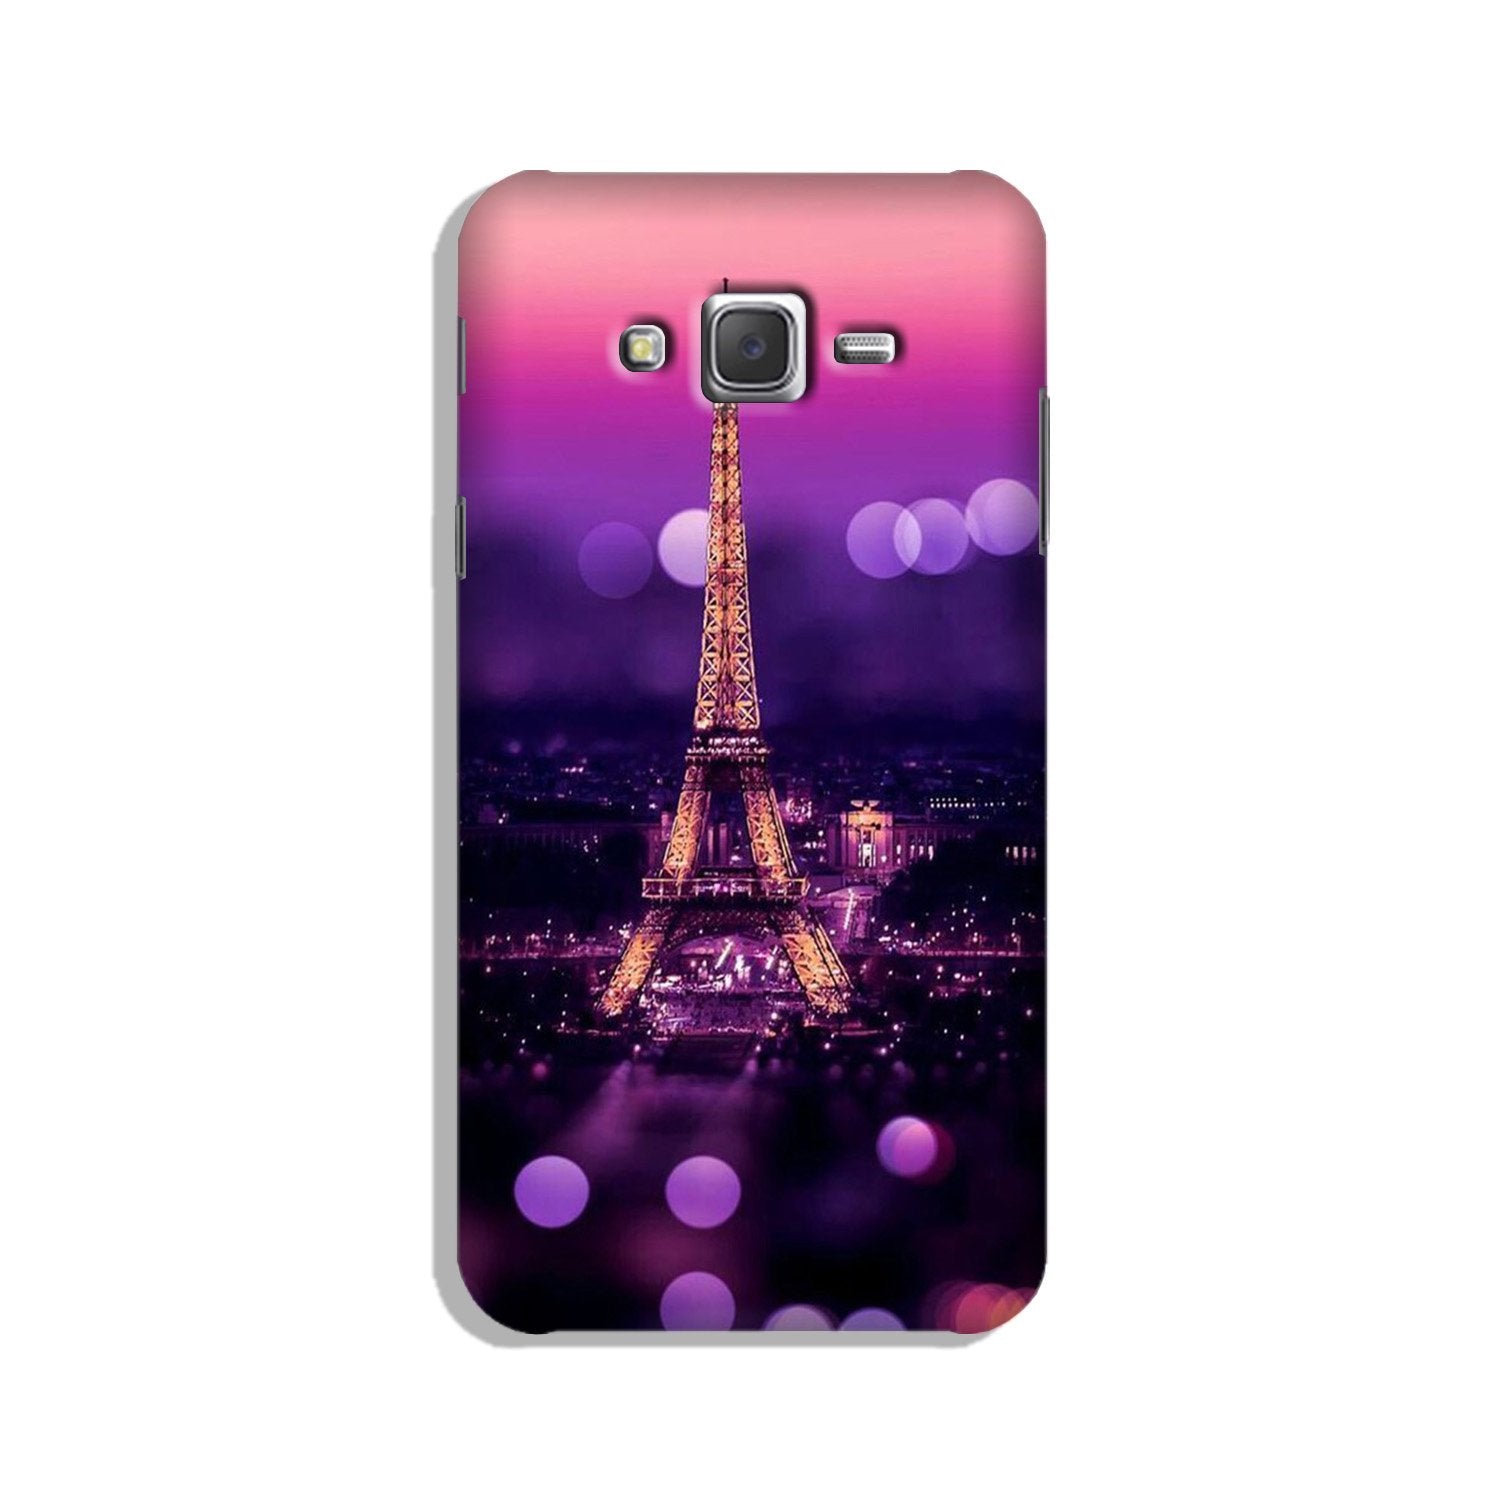 Eiffel Tower Case for Galaxy J5 (2015)